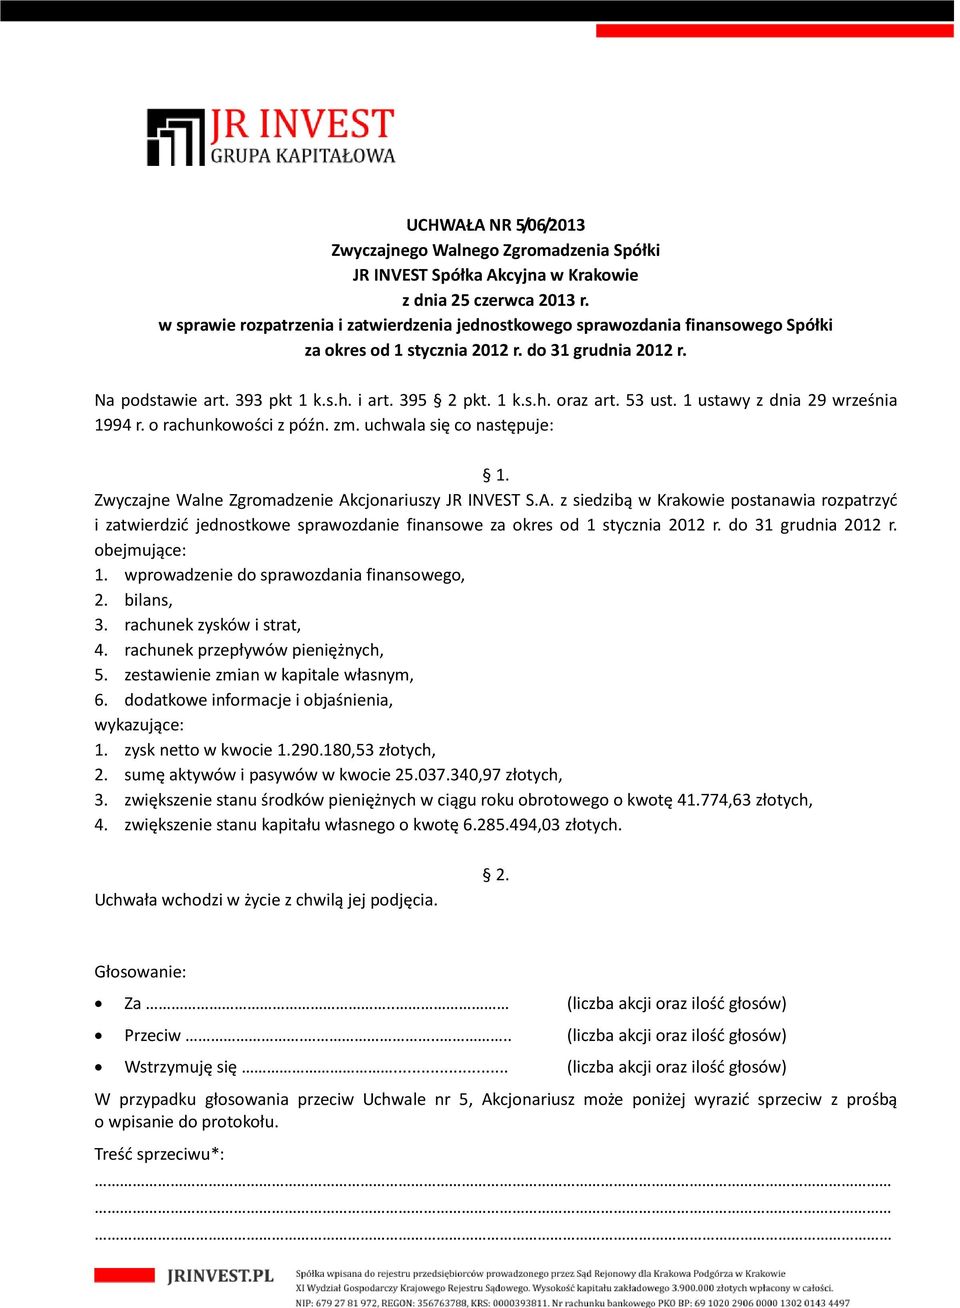 cjonariuszy JR INVEST S.A. z siedzibą w Krakowie postanawia rozpatrzyć i zatwierdzić jednostkowe sprawozdanie finansowe za okres od 1 stycznia 2012 r. do 31 grudnia 2012 r. obejmujące: 1.